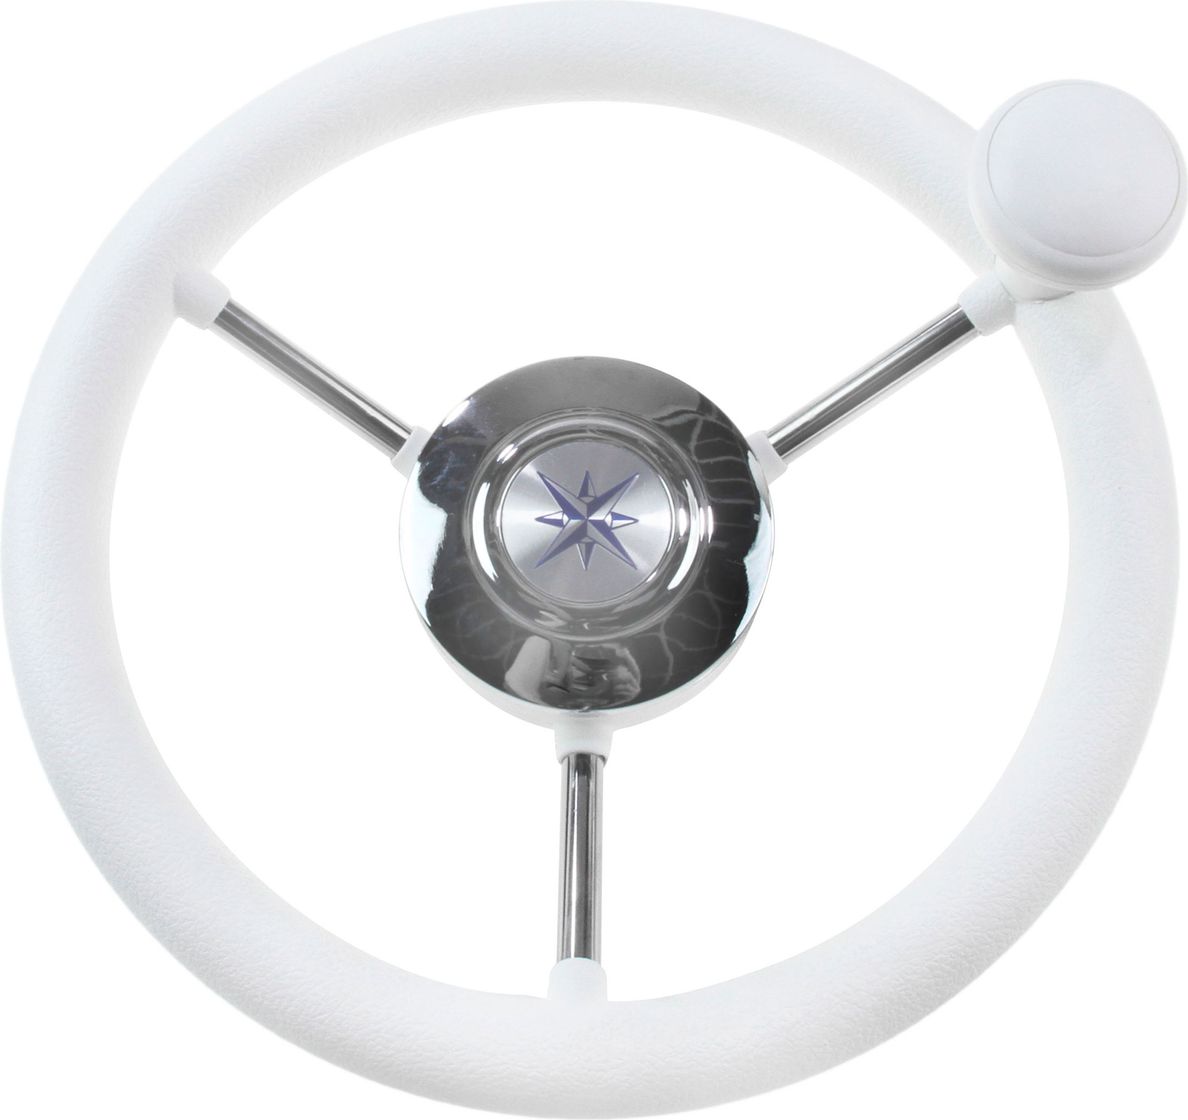 Рулевое колесо LIPARI обод белый, спицы серебряные д. 280 мм со спинером VN828050-08 рулевое колесо matrix белый обод more 10016474